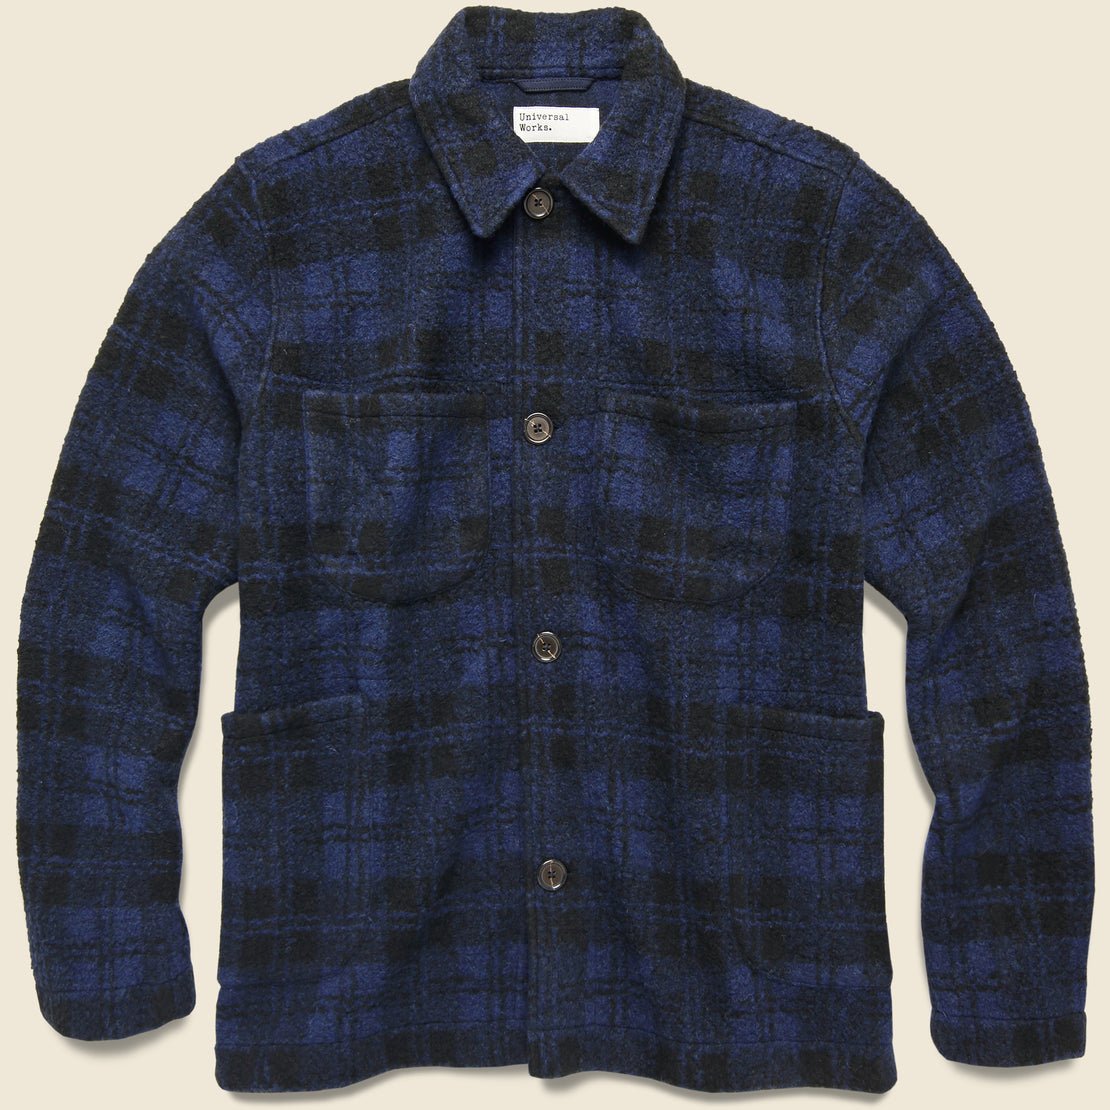 Universal Works Lumber Fleece Wool Jacket - Navy